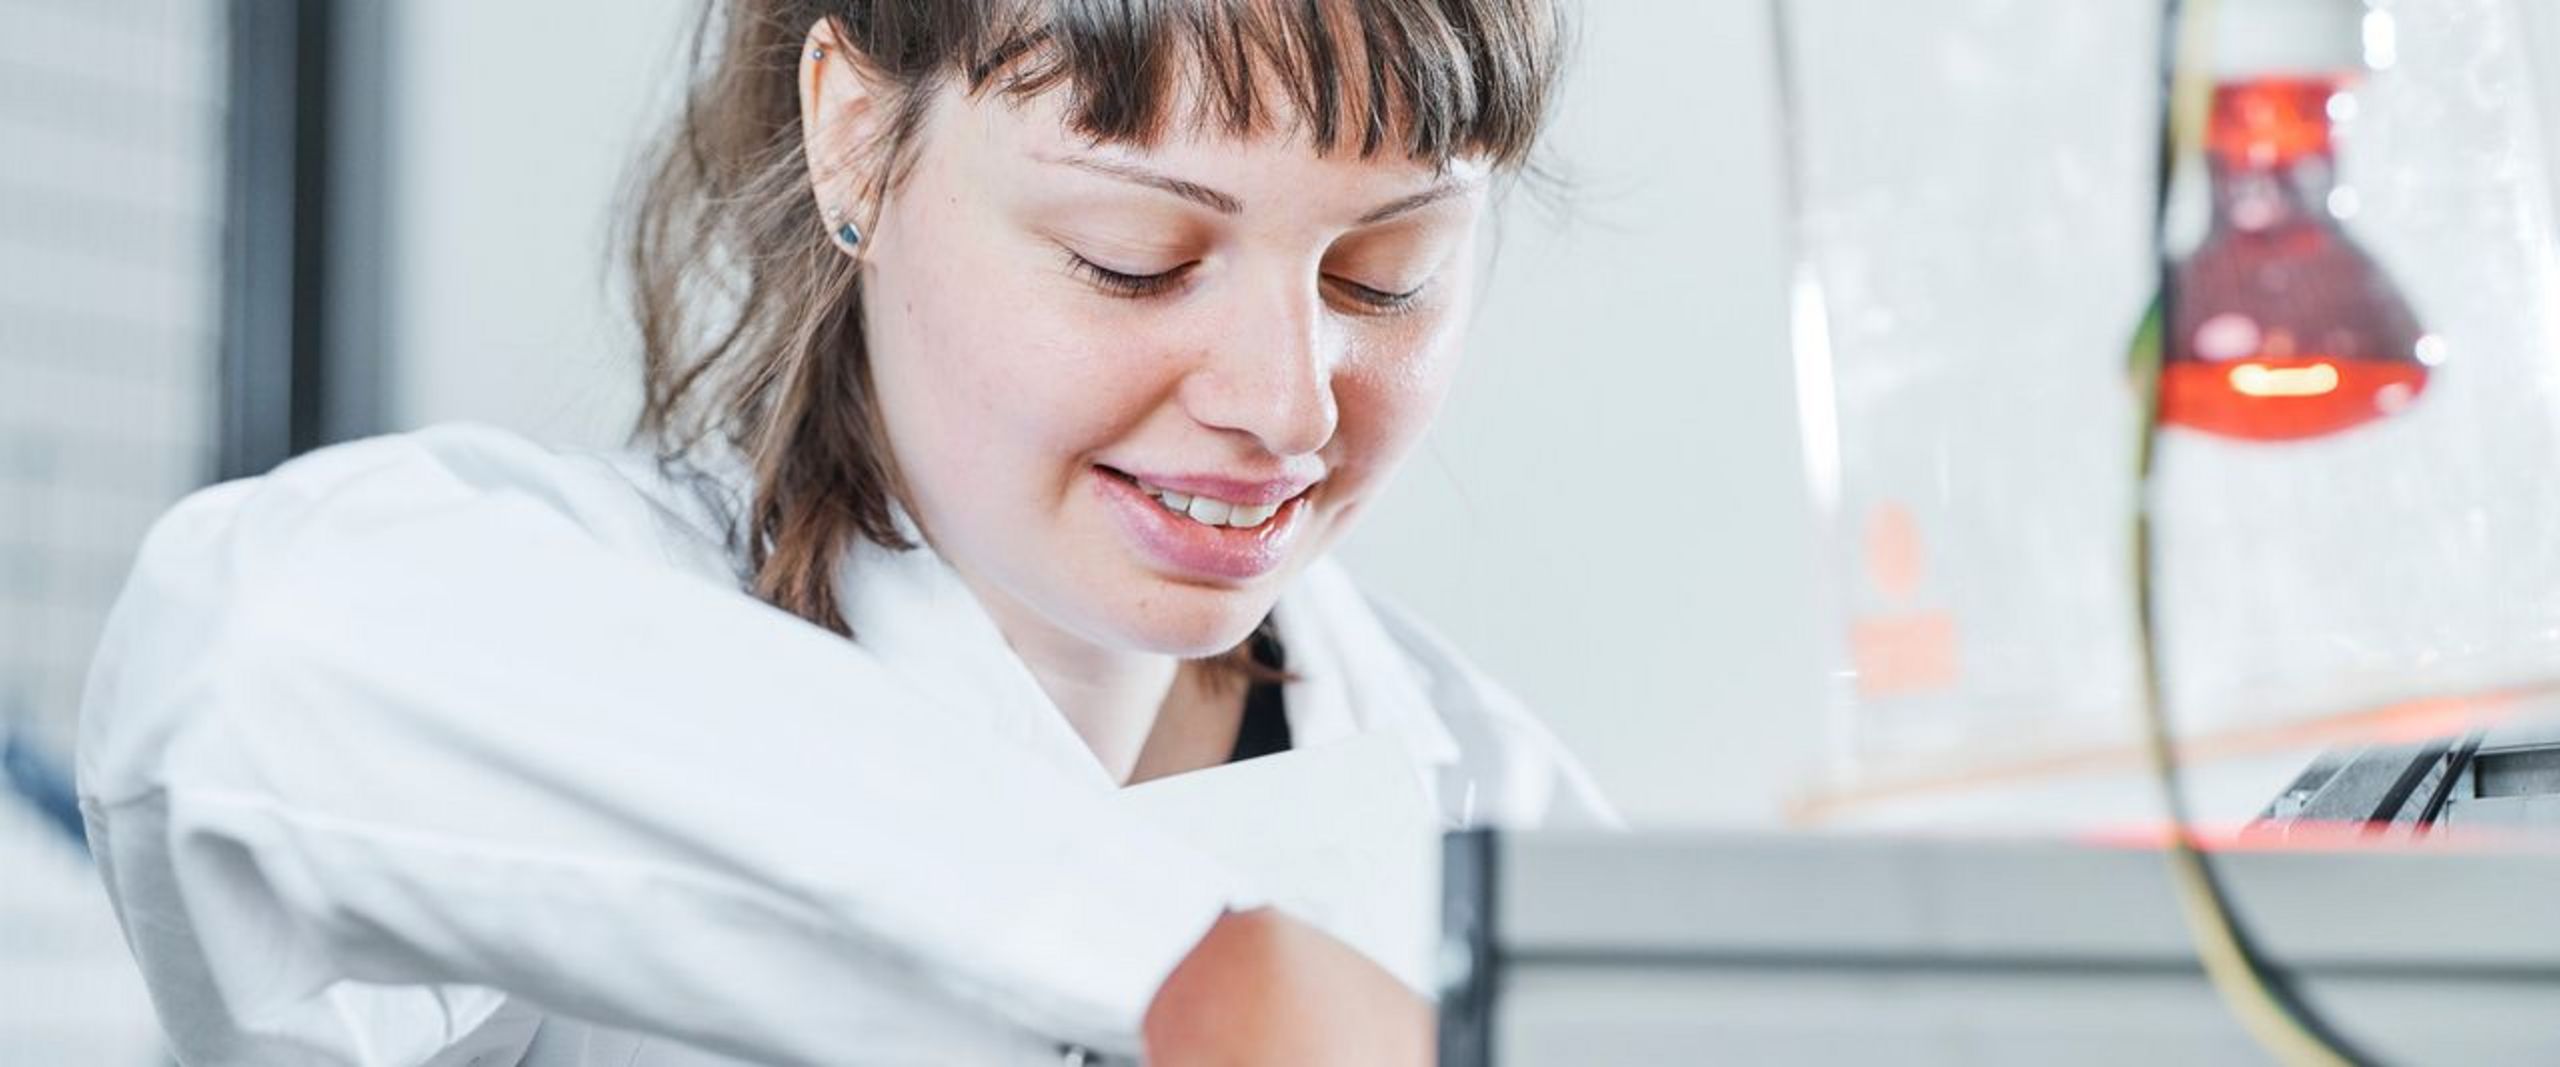 Junge Frau mit Zopf und weißem Kittel schaut runter auf ein Gerät, an dem sie arbeitet.